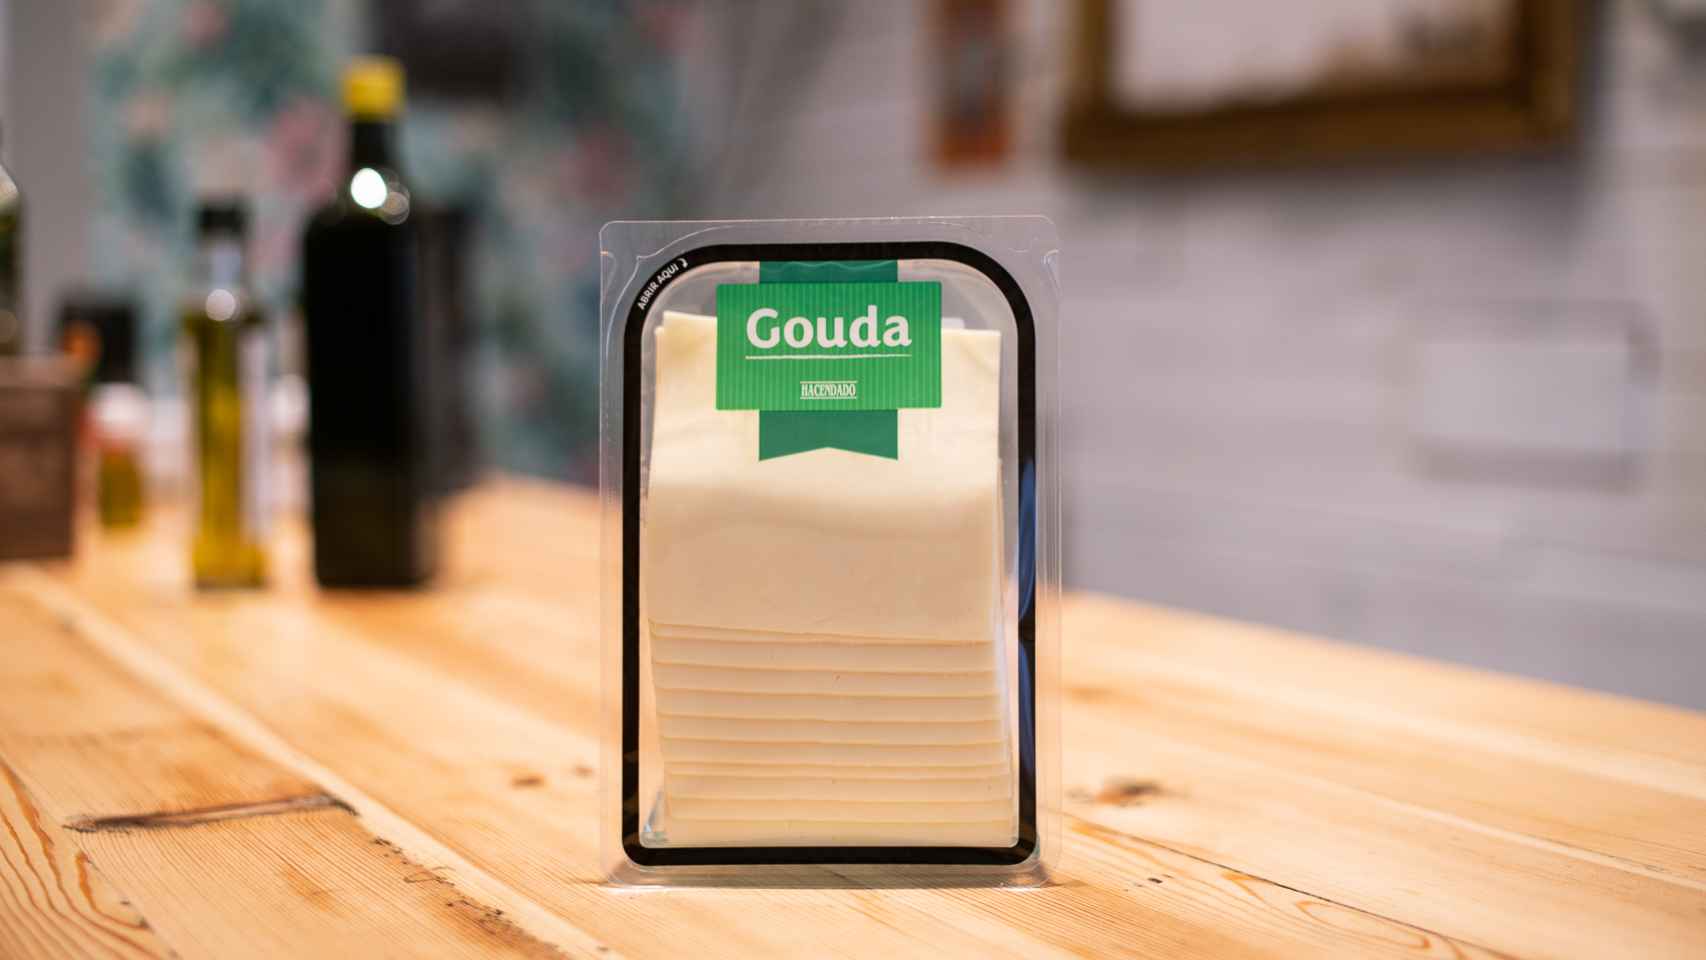 El paquete de queso Gouda en lonchas de Hacendado, la marcas blanca de Mercadona.